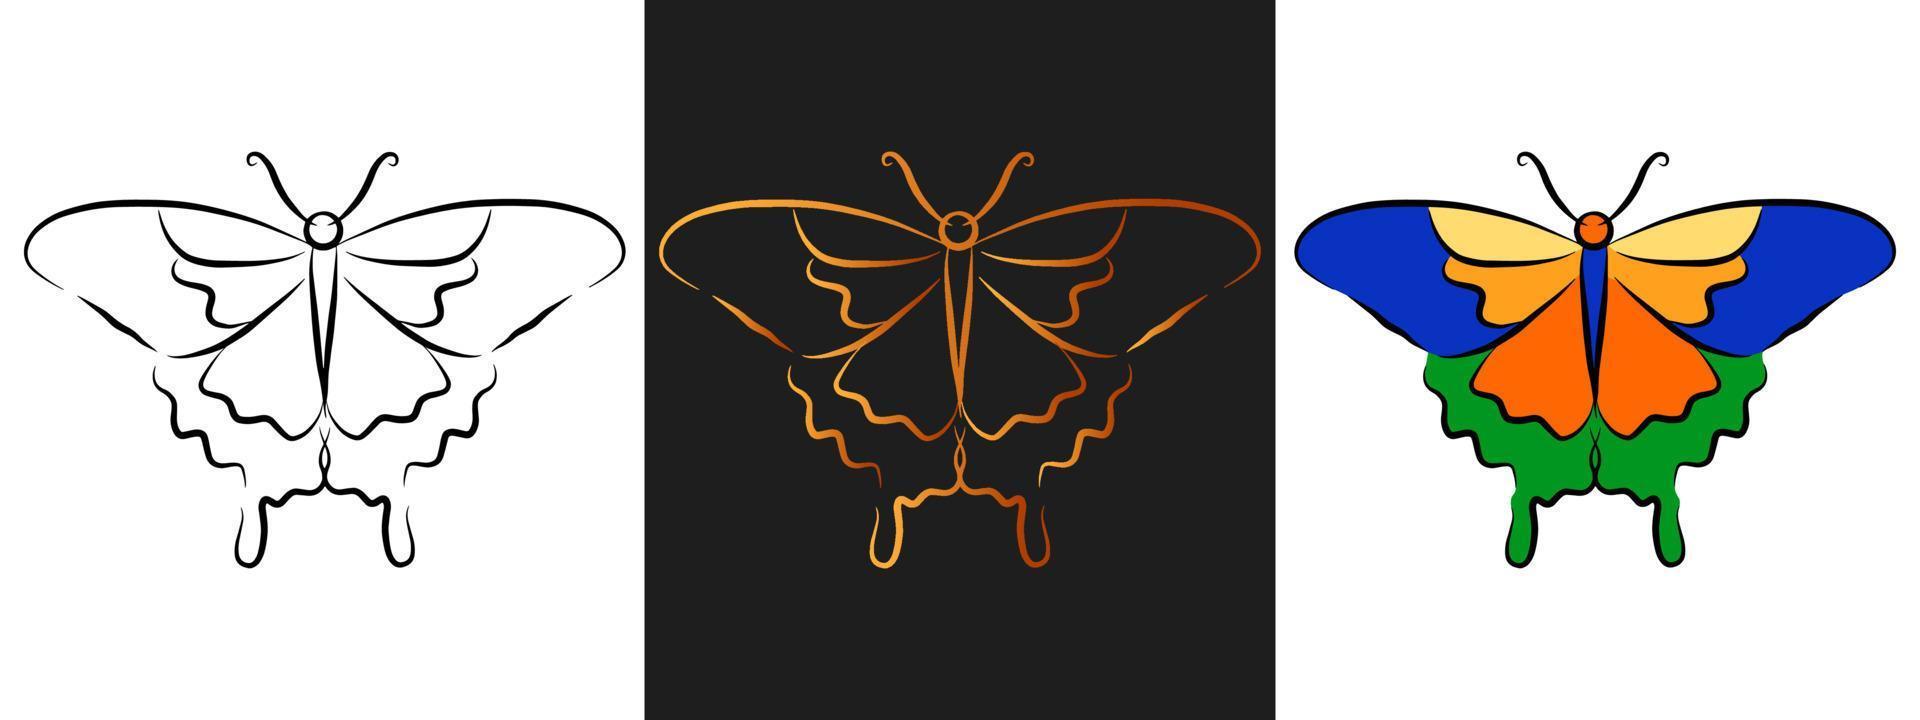 elemento di design del logo del profilo animale della farfalla. contorno nero e oro, set di icone isolate in stile line art. bellissimo modello di tatuaggio. disegno dell'insetto del fumetto. vettore